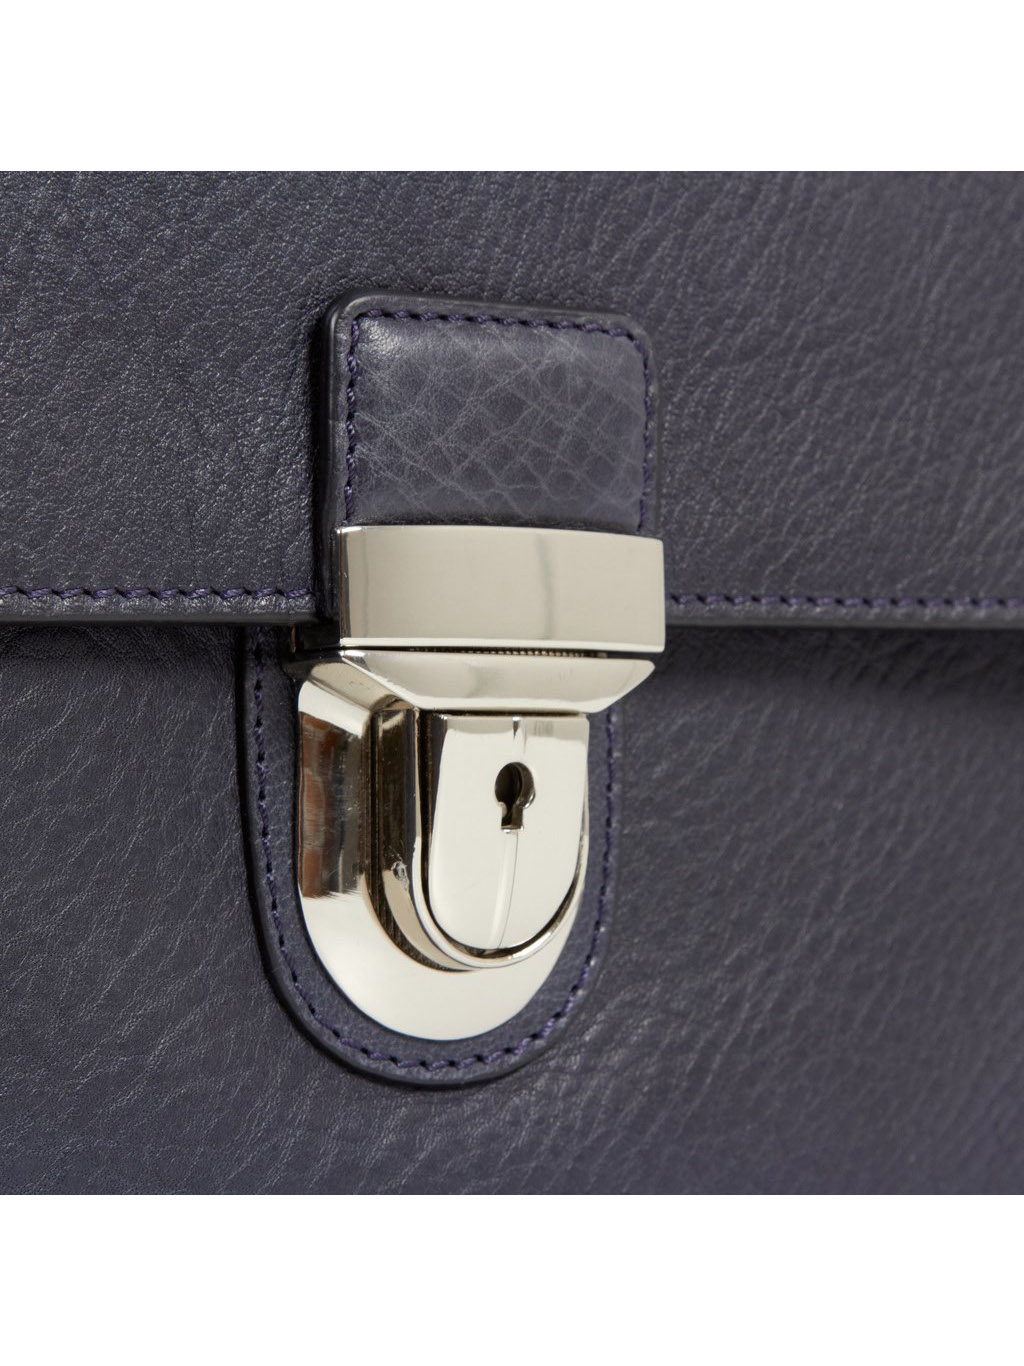 Фото Вместительный мужской портфель из мягкой кожи синего цвета Портфели